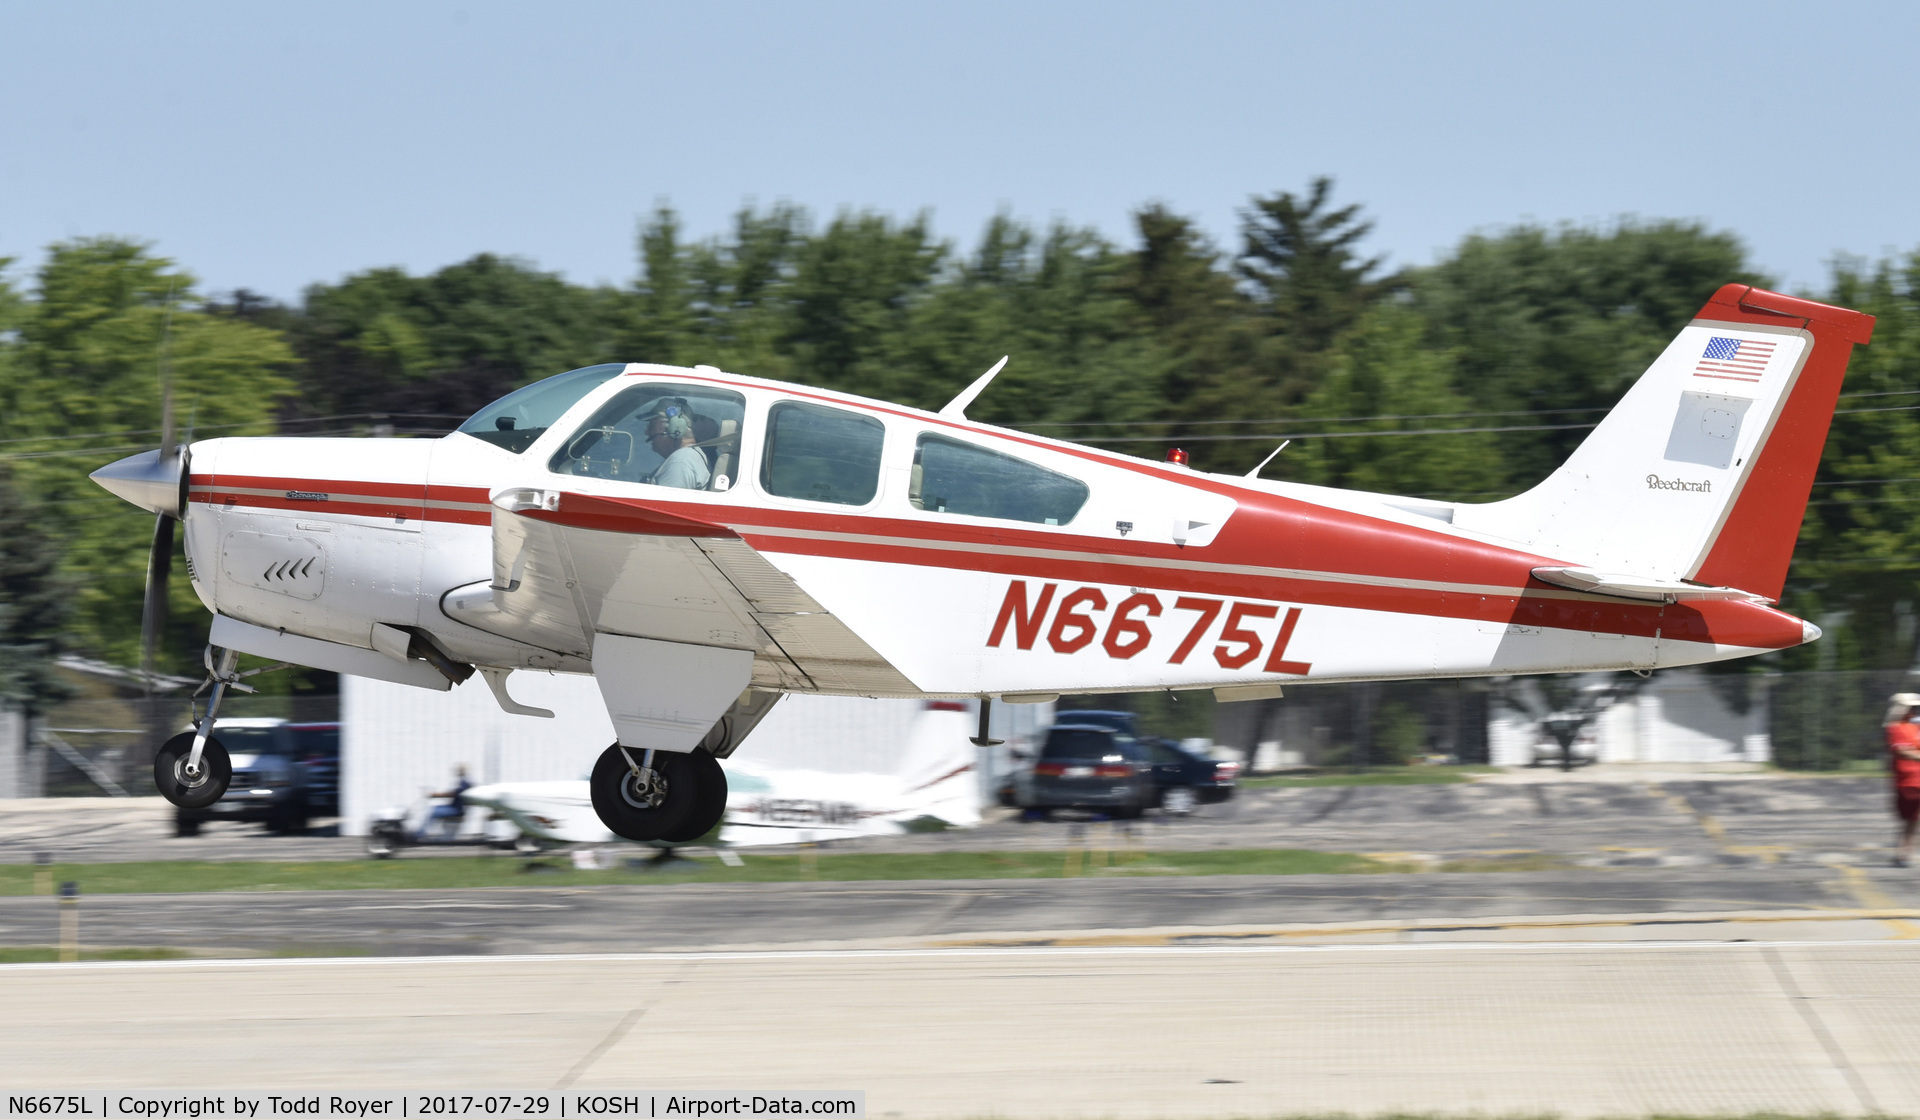 N6675L, 1979 Beech F33A Bonanza C/N CE-882, Airventure 2017